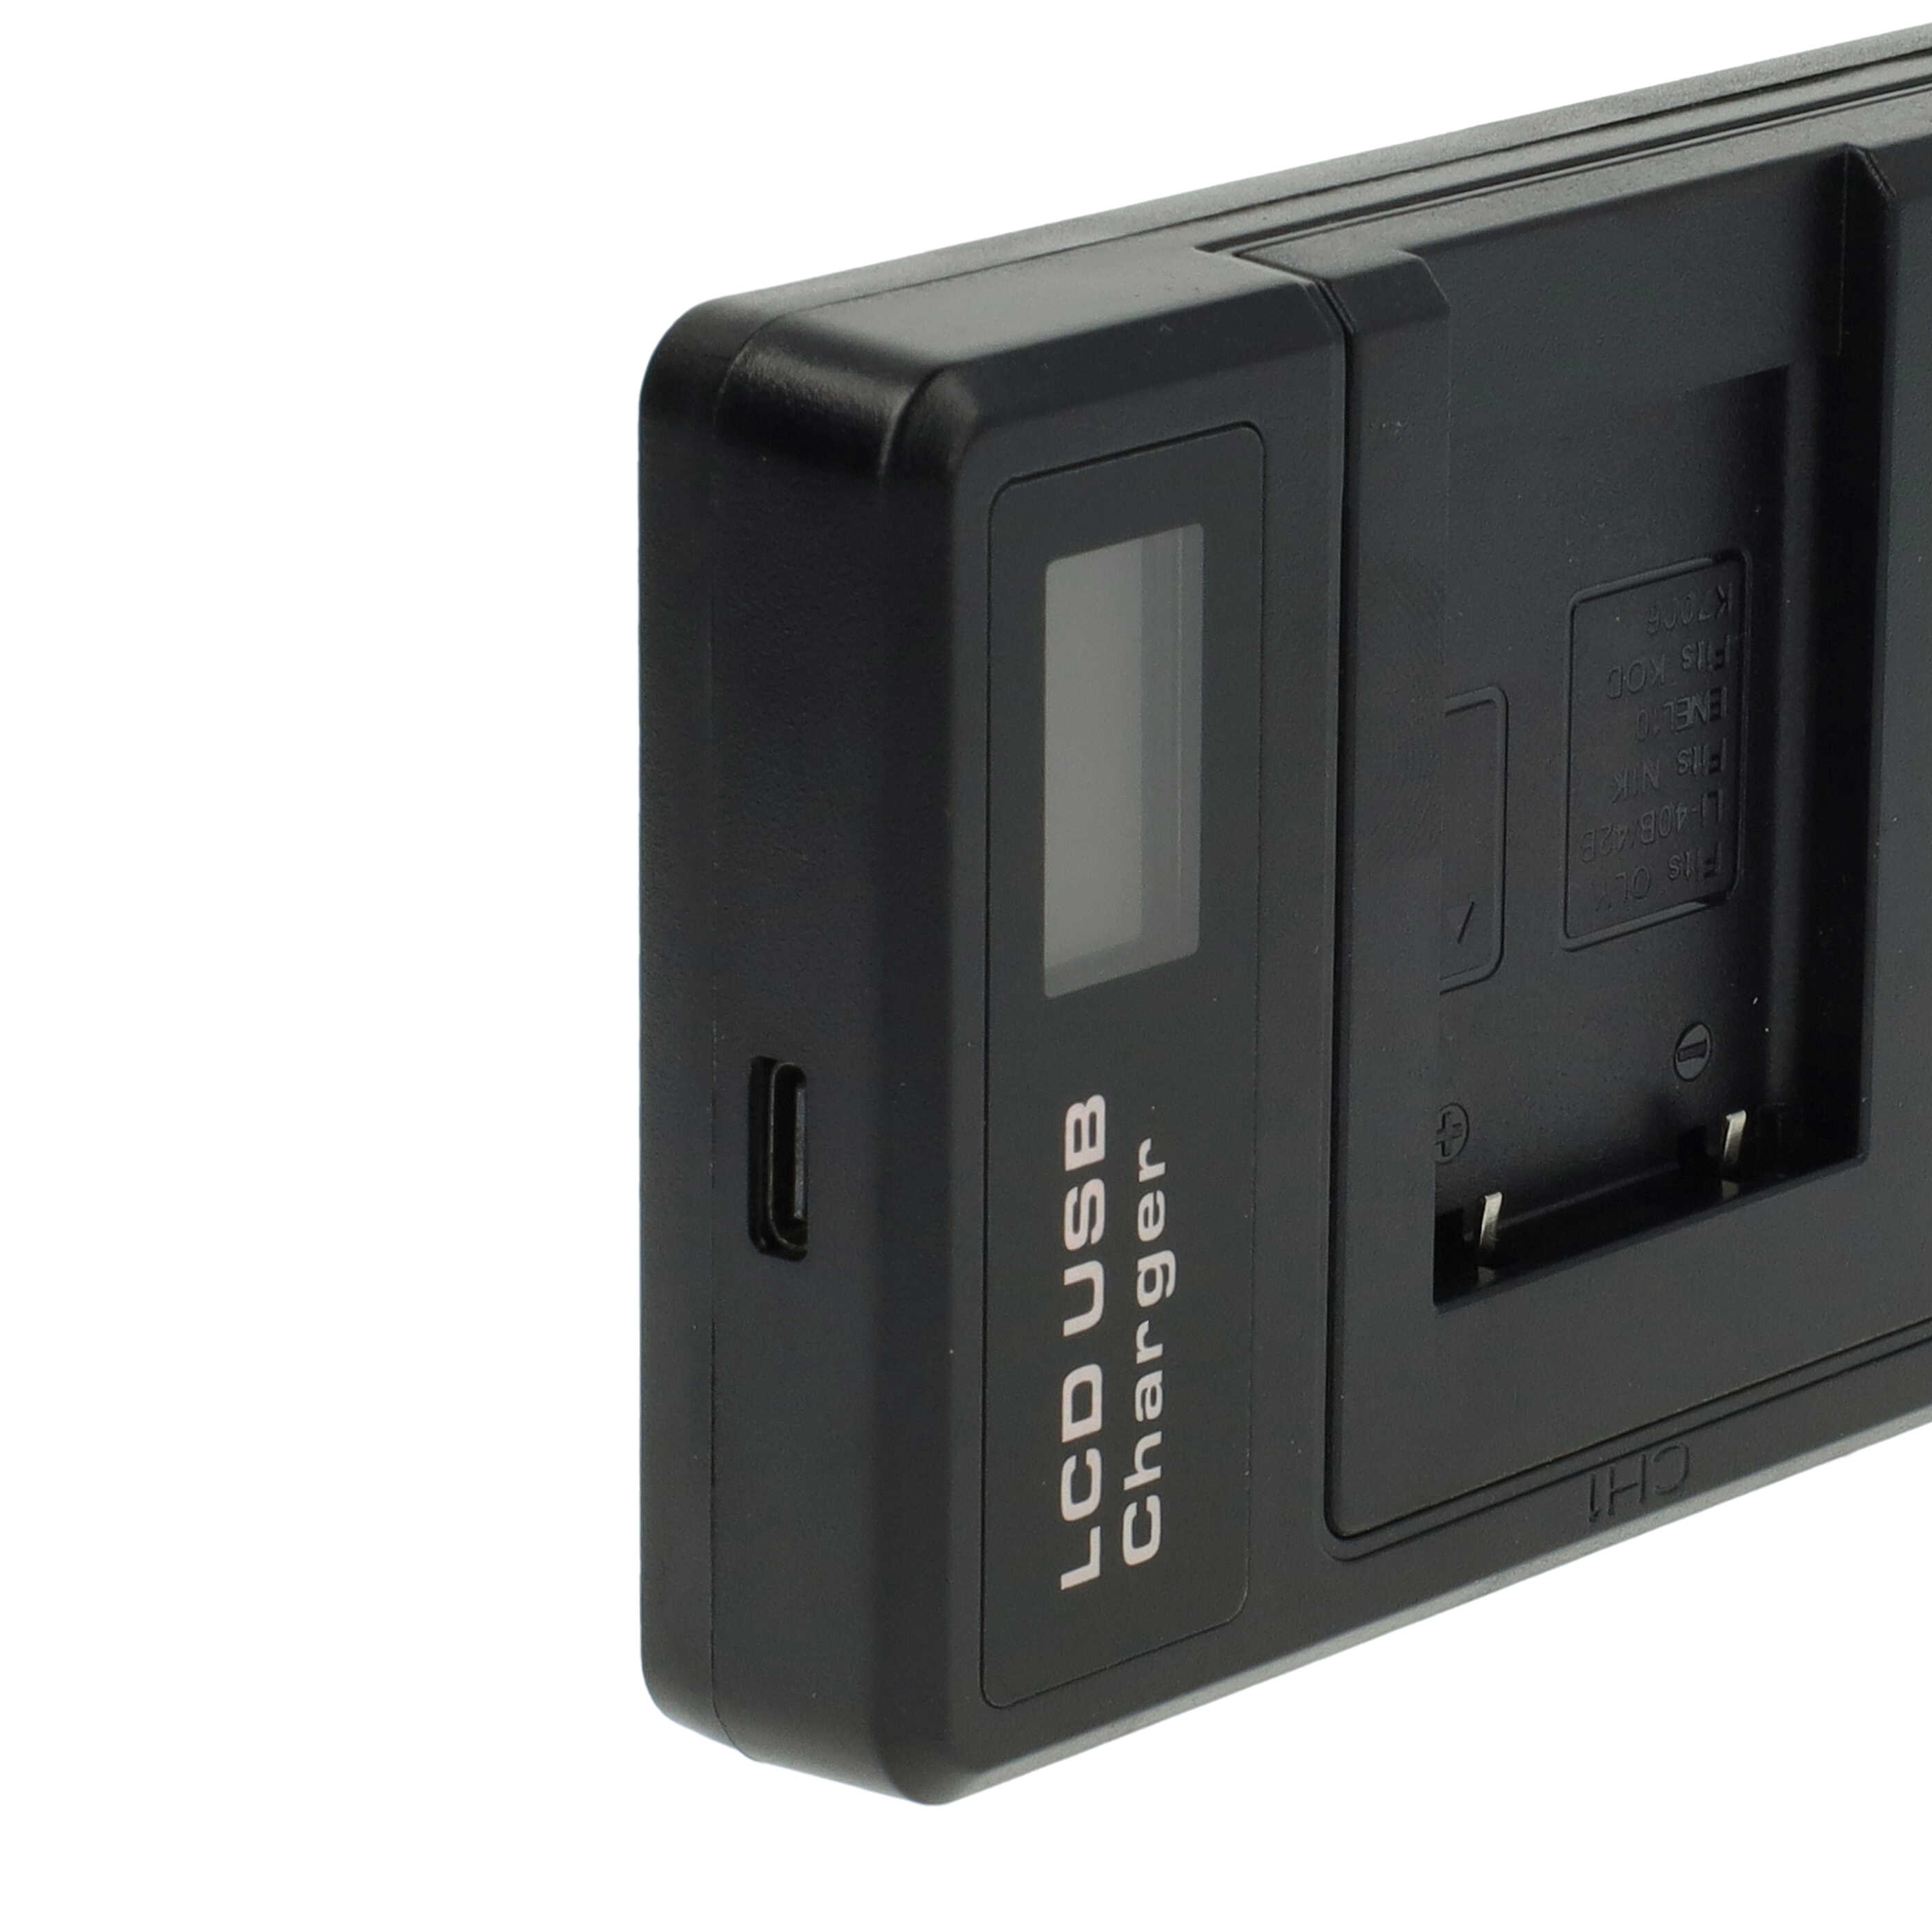 Akku Ladegerät passend für GE Digitalkamera und weitere - 0,5 A, 4,2 V